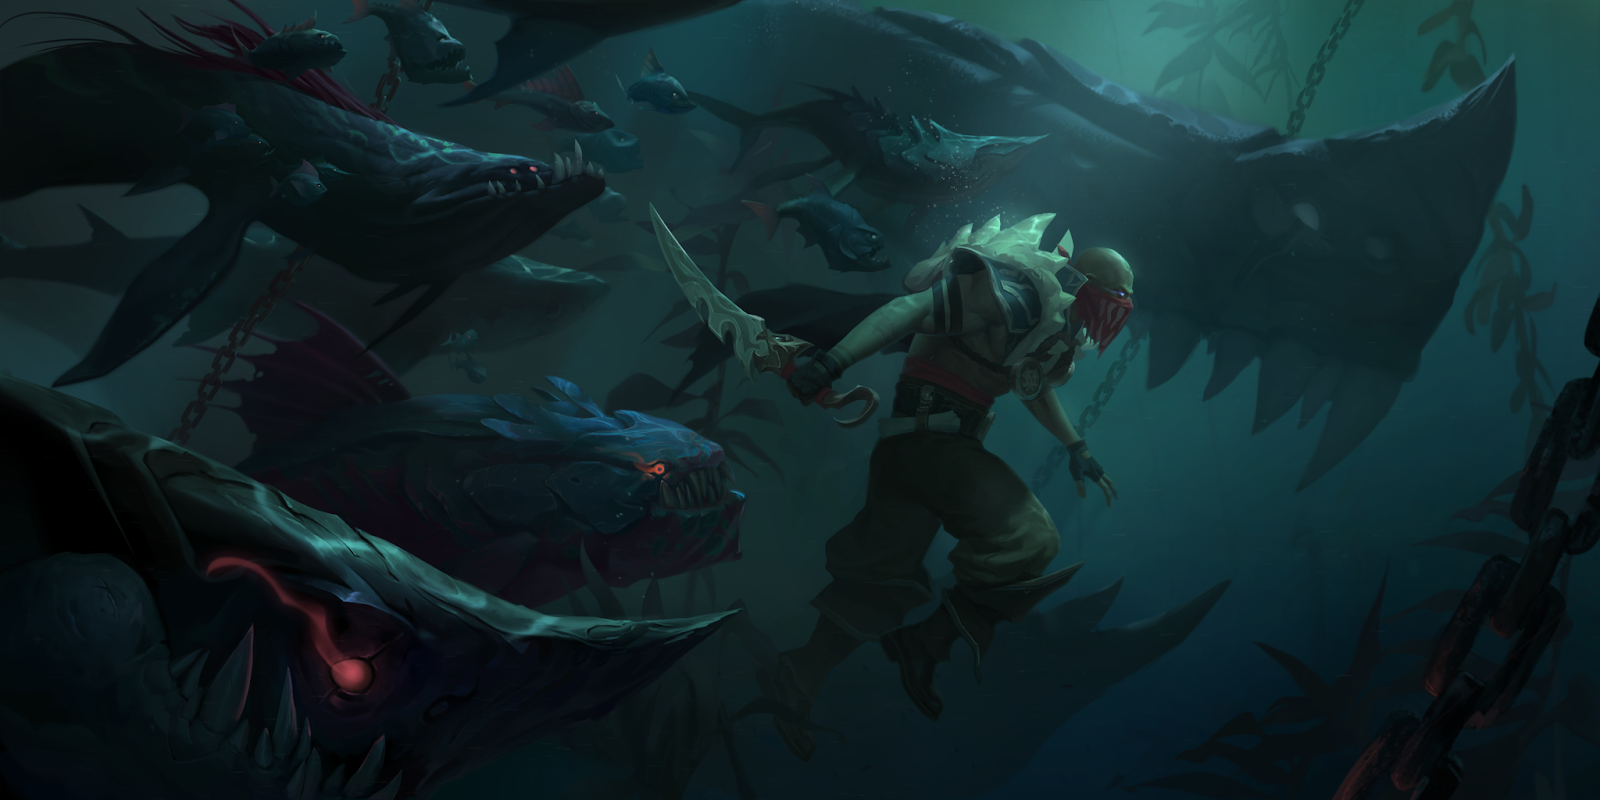 Pyke nyugodtan lebeg a vízben, kezében a csontnyársával, körülötte Lurkerek és cápák úszkálnak. A Lurkerek köré mintát rajzol a késéről lemosódó vér.